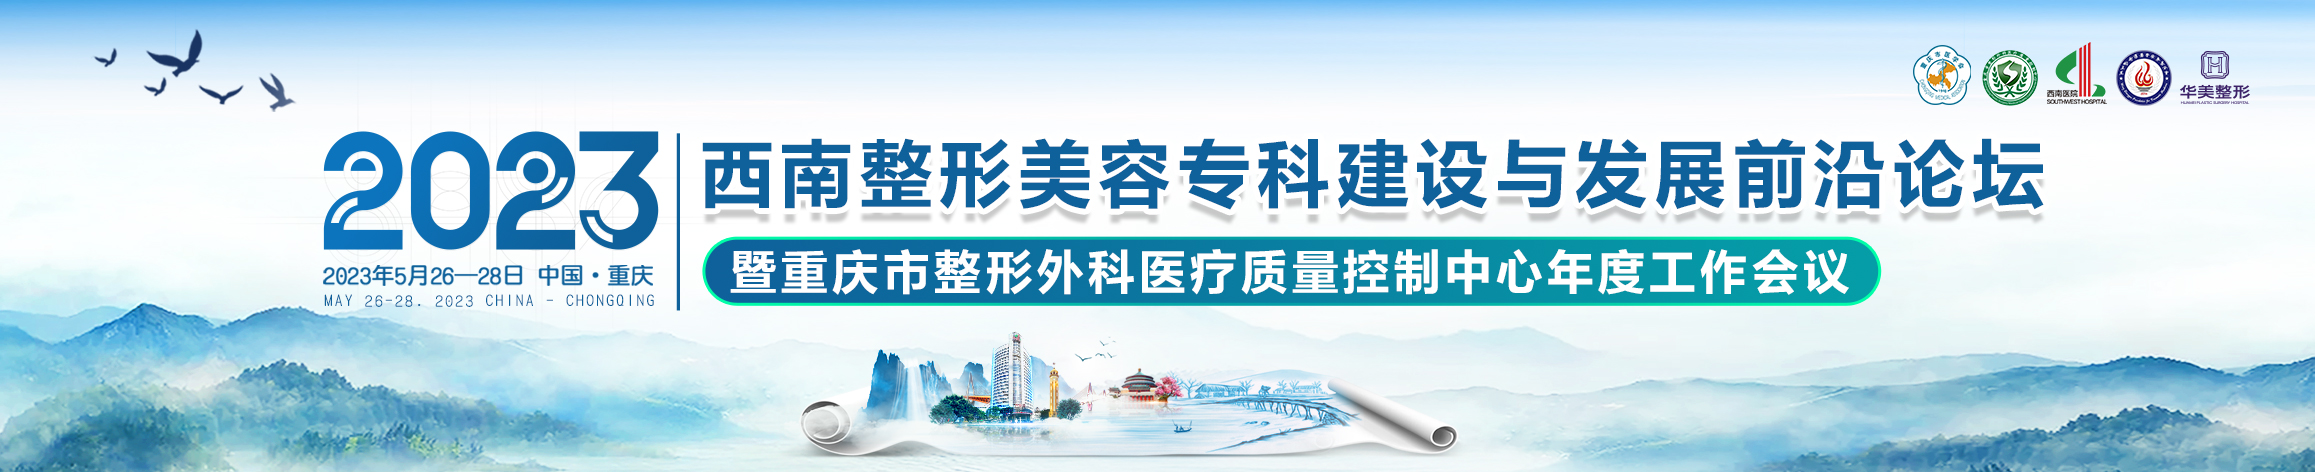 2023年西南整形美容专科建设与发展前沿论坛暨重庆市整形外科医疗质量控制中心年度工作会议